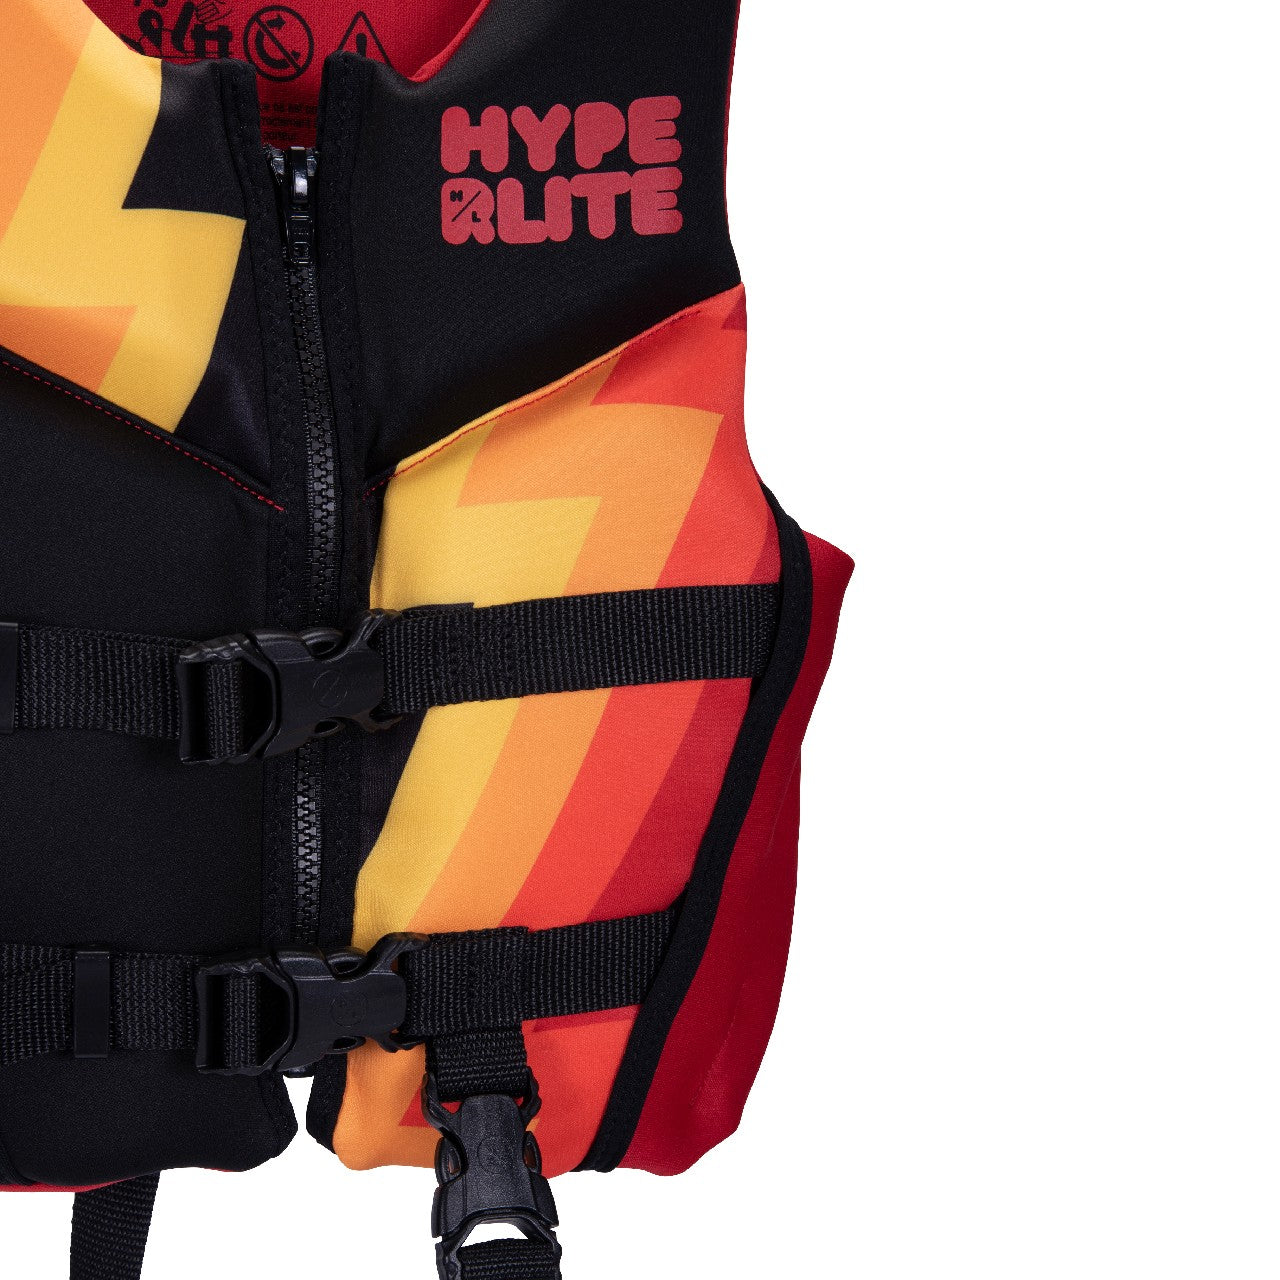 Hyperlite Indy Child Life Jacket - 88 Gear